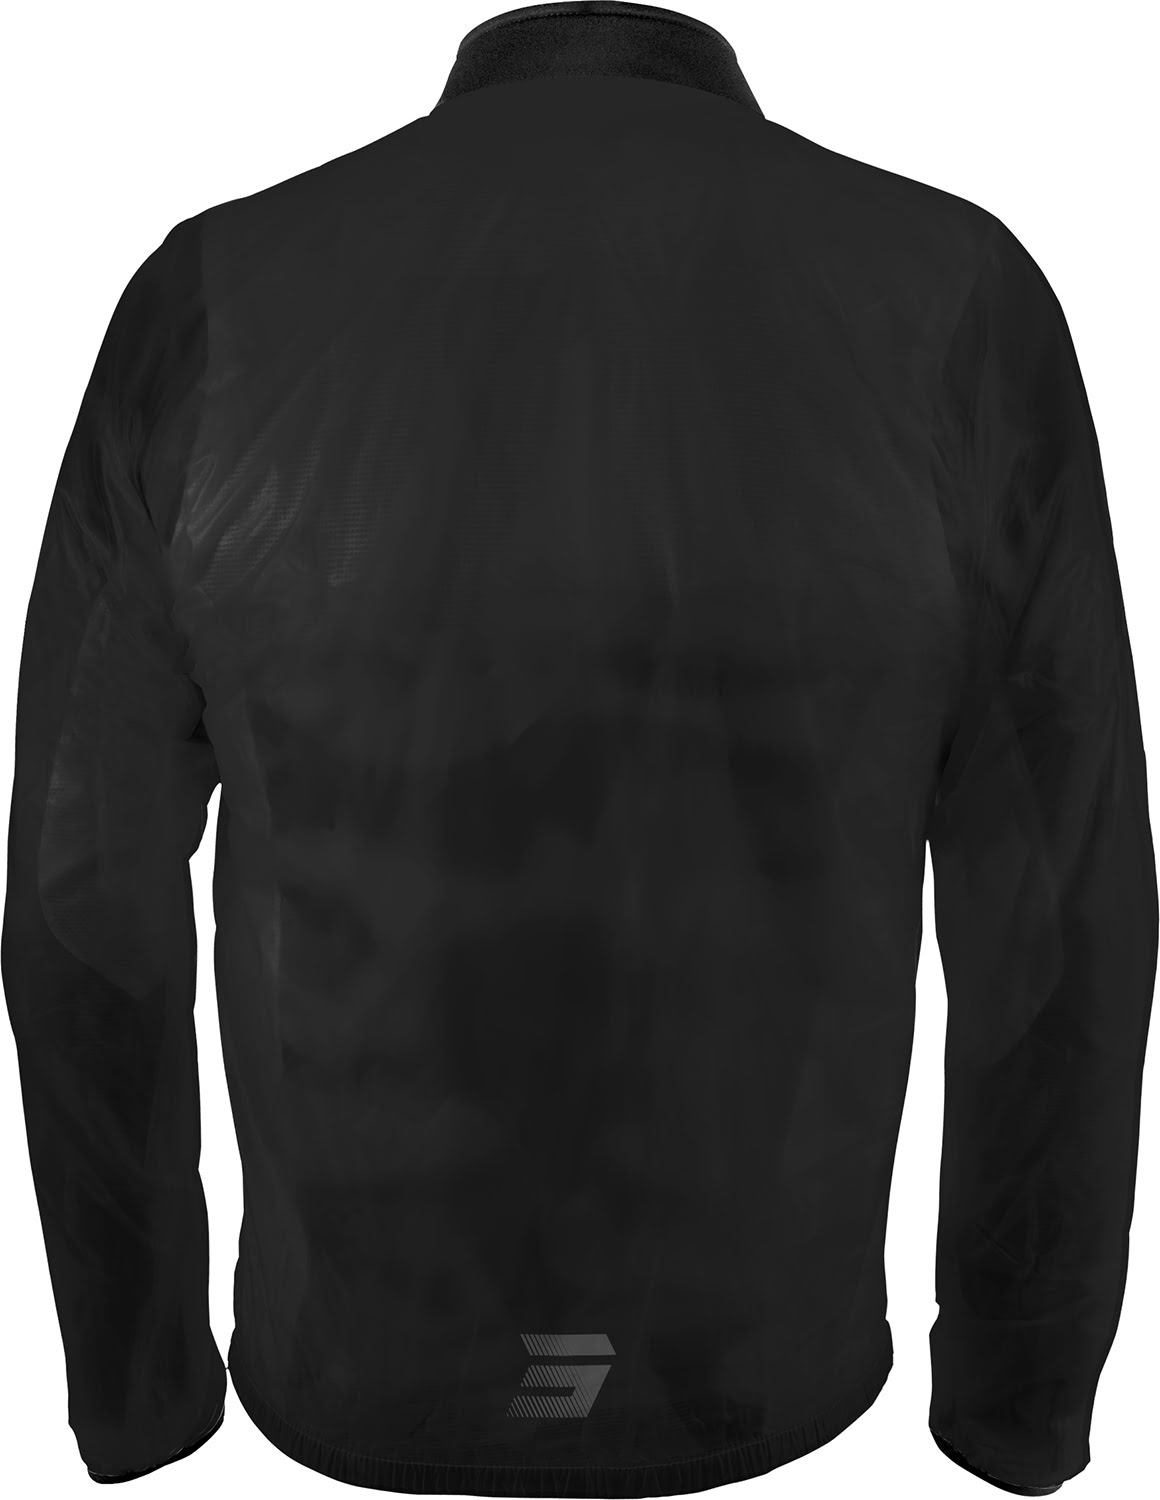 Jacket Windbreaker WINDBREKEAR 2.0 Black SHOT 